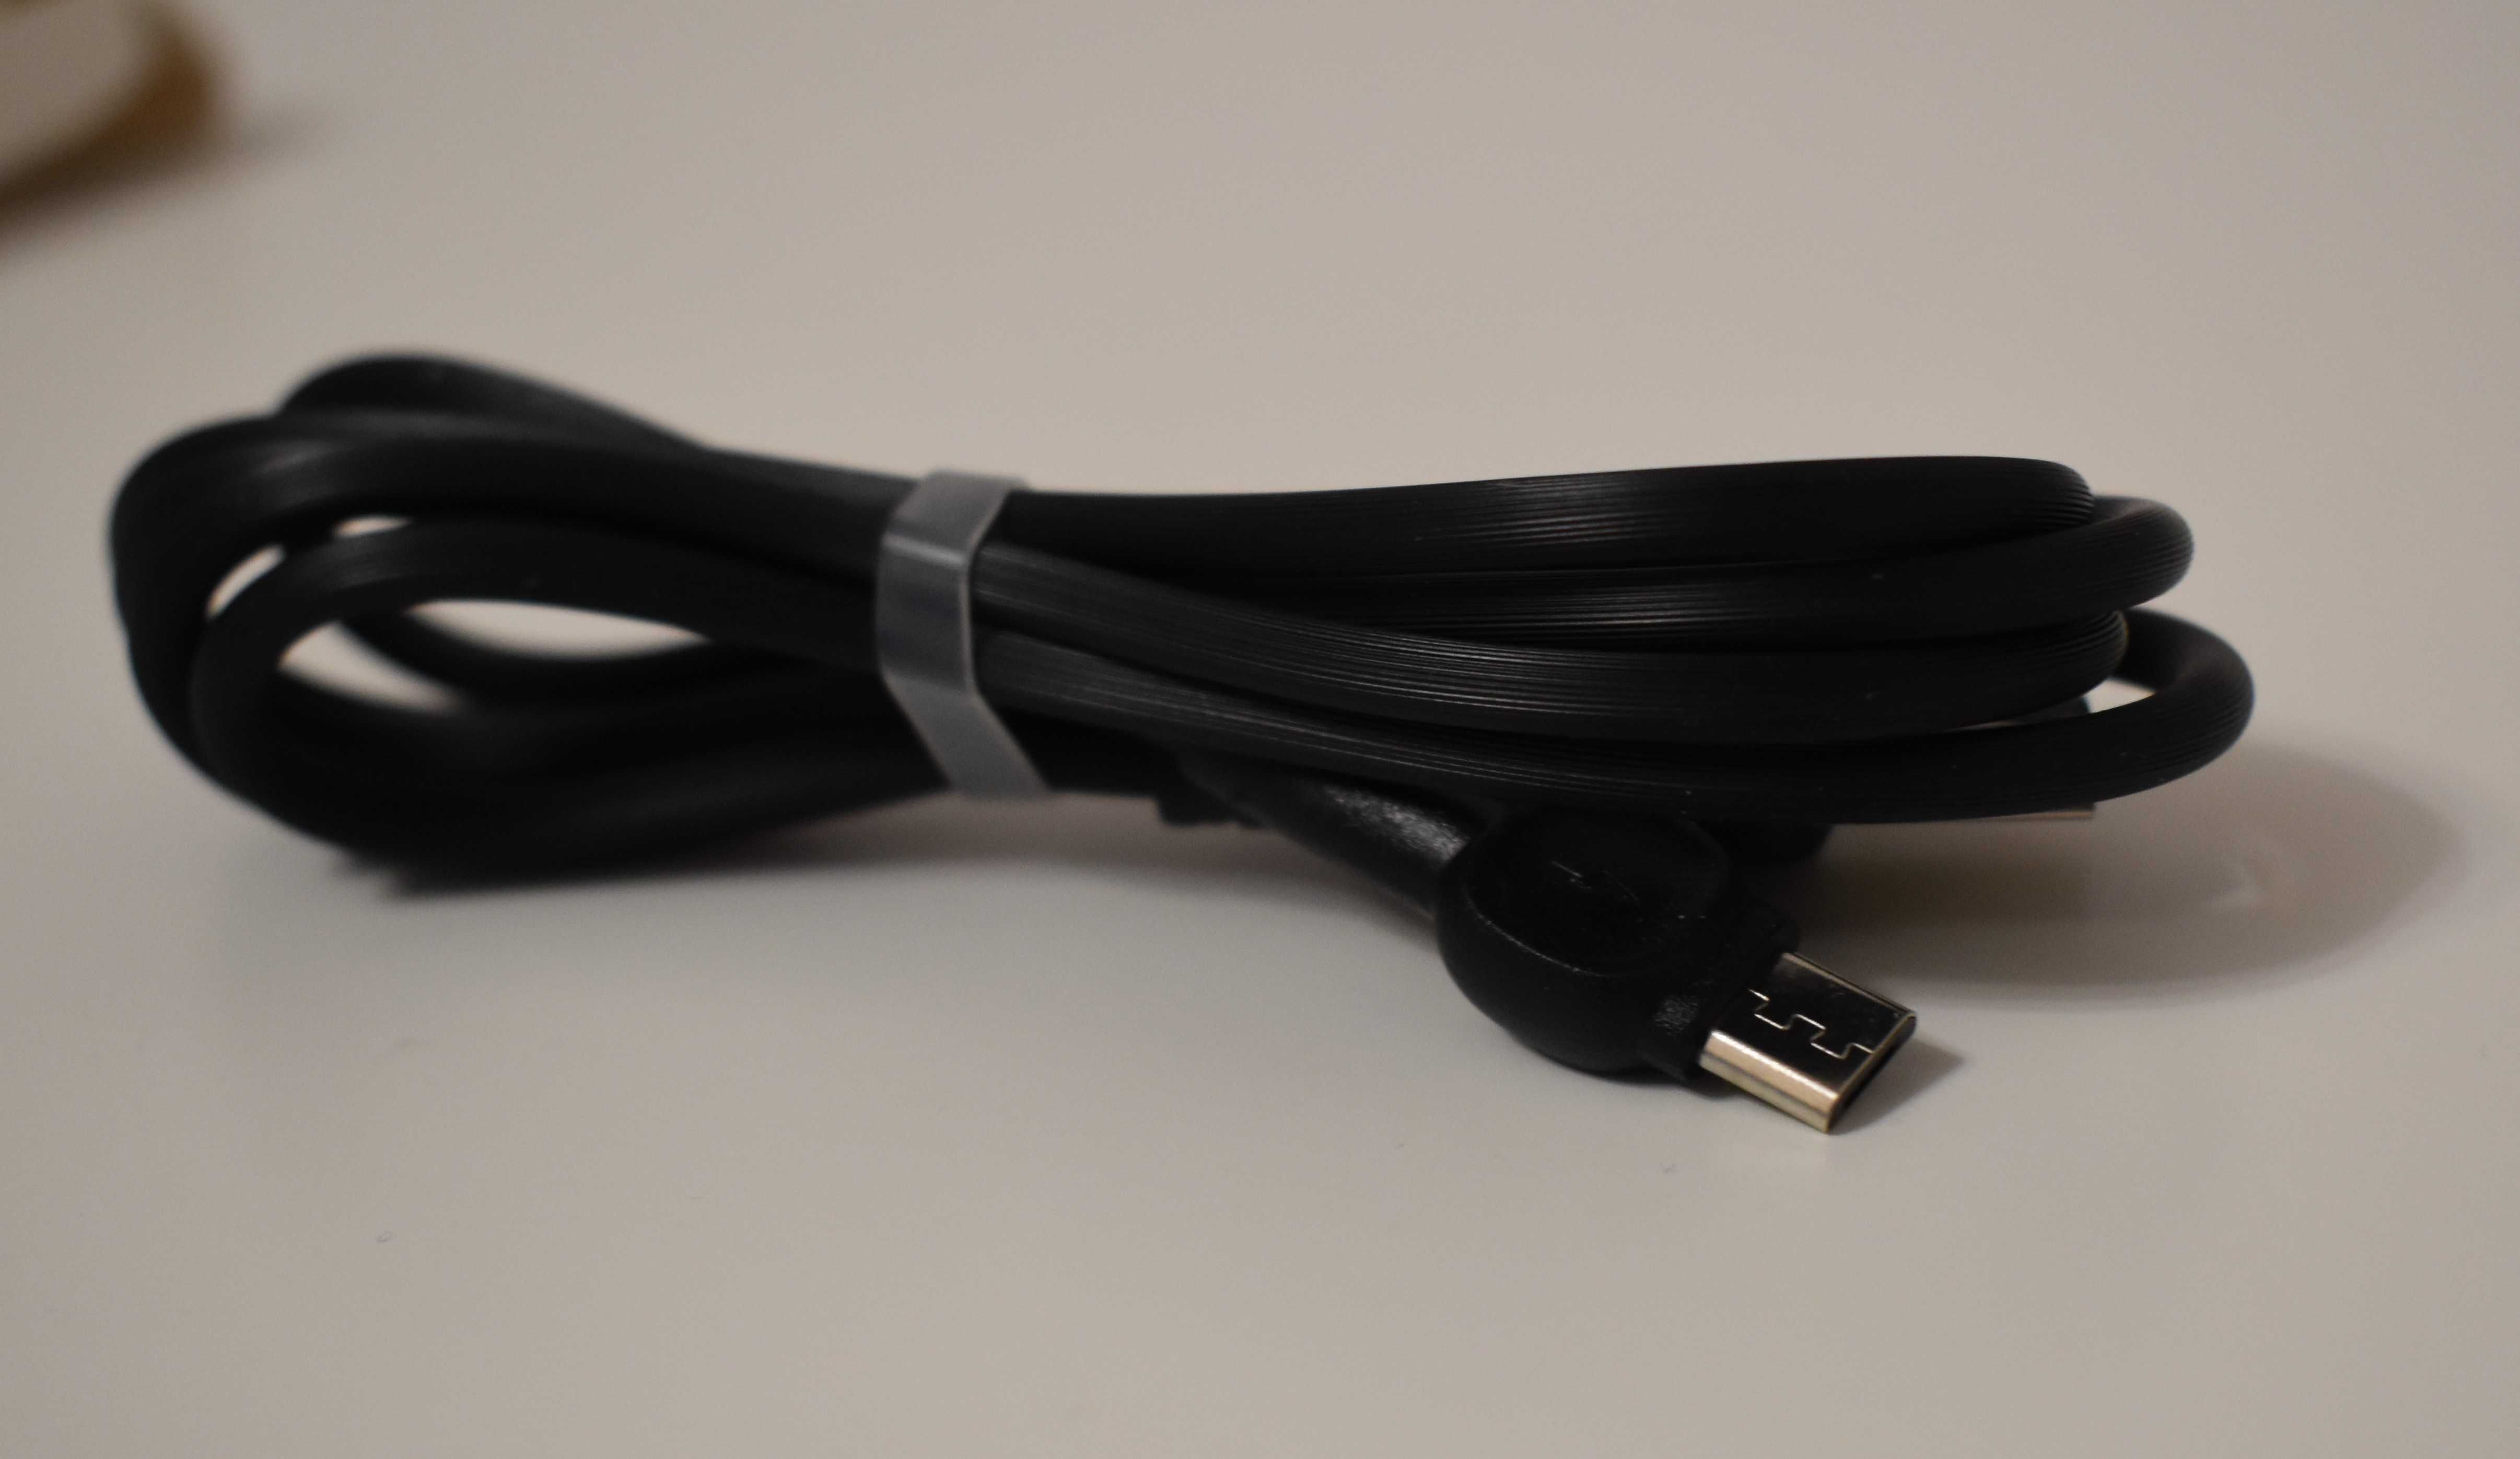 Cablu micro USB pentru incarcare rapida